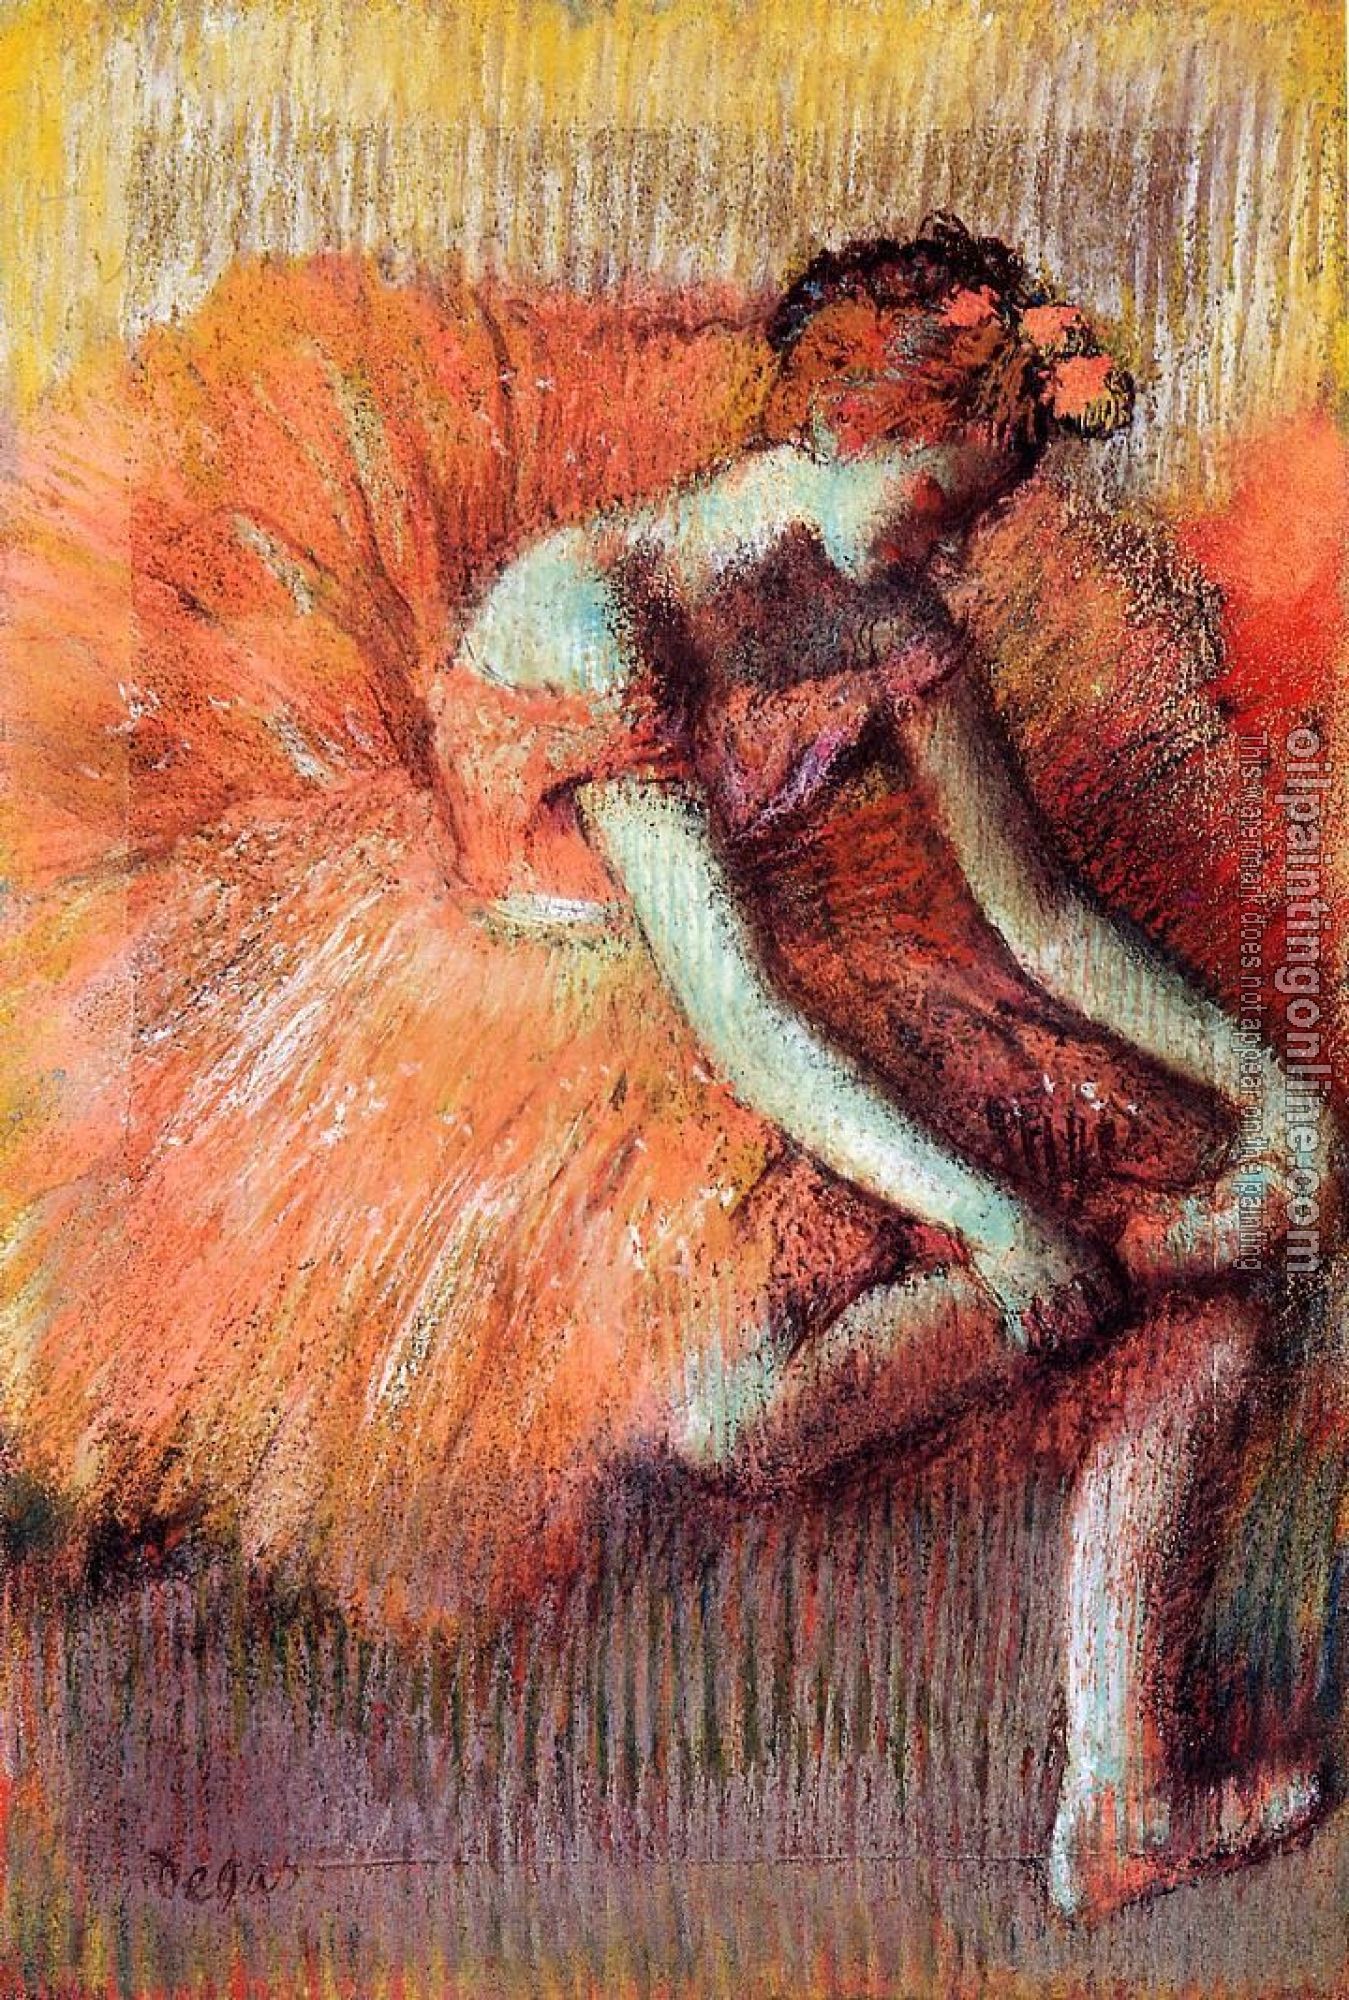 Degas, Edgar - Dancer Adjusting Her Sandel